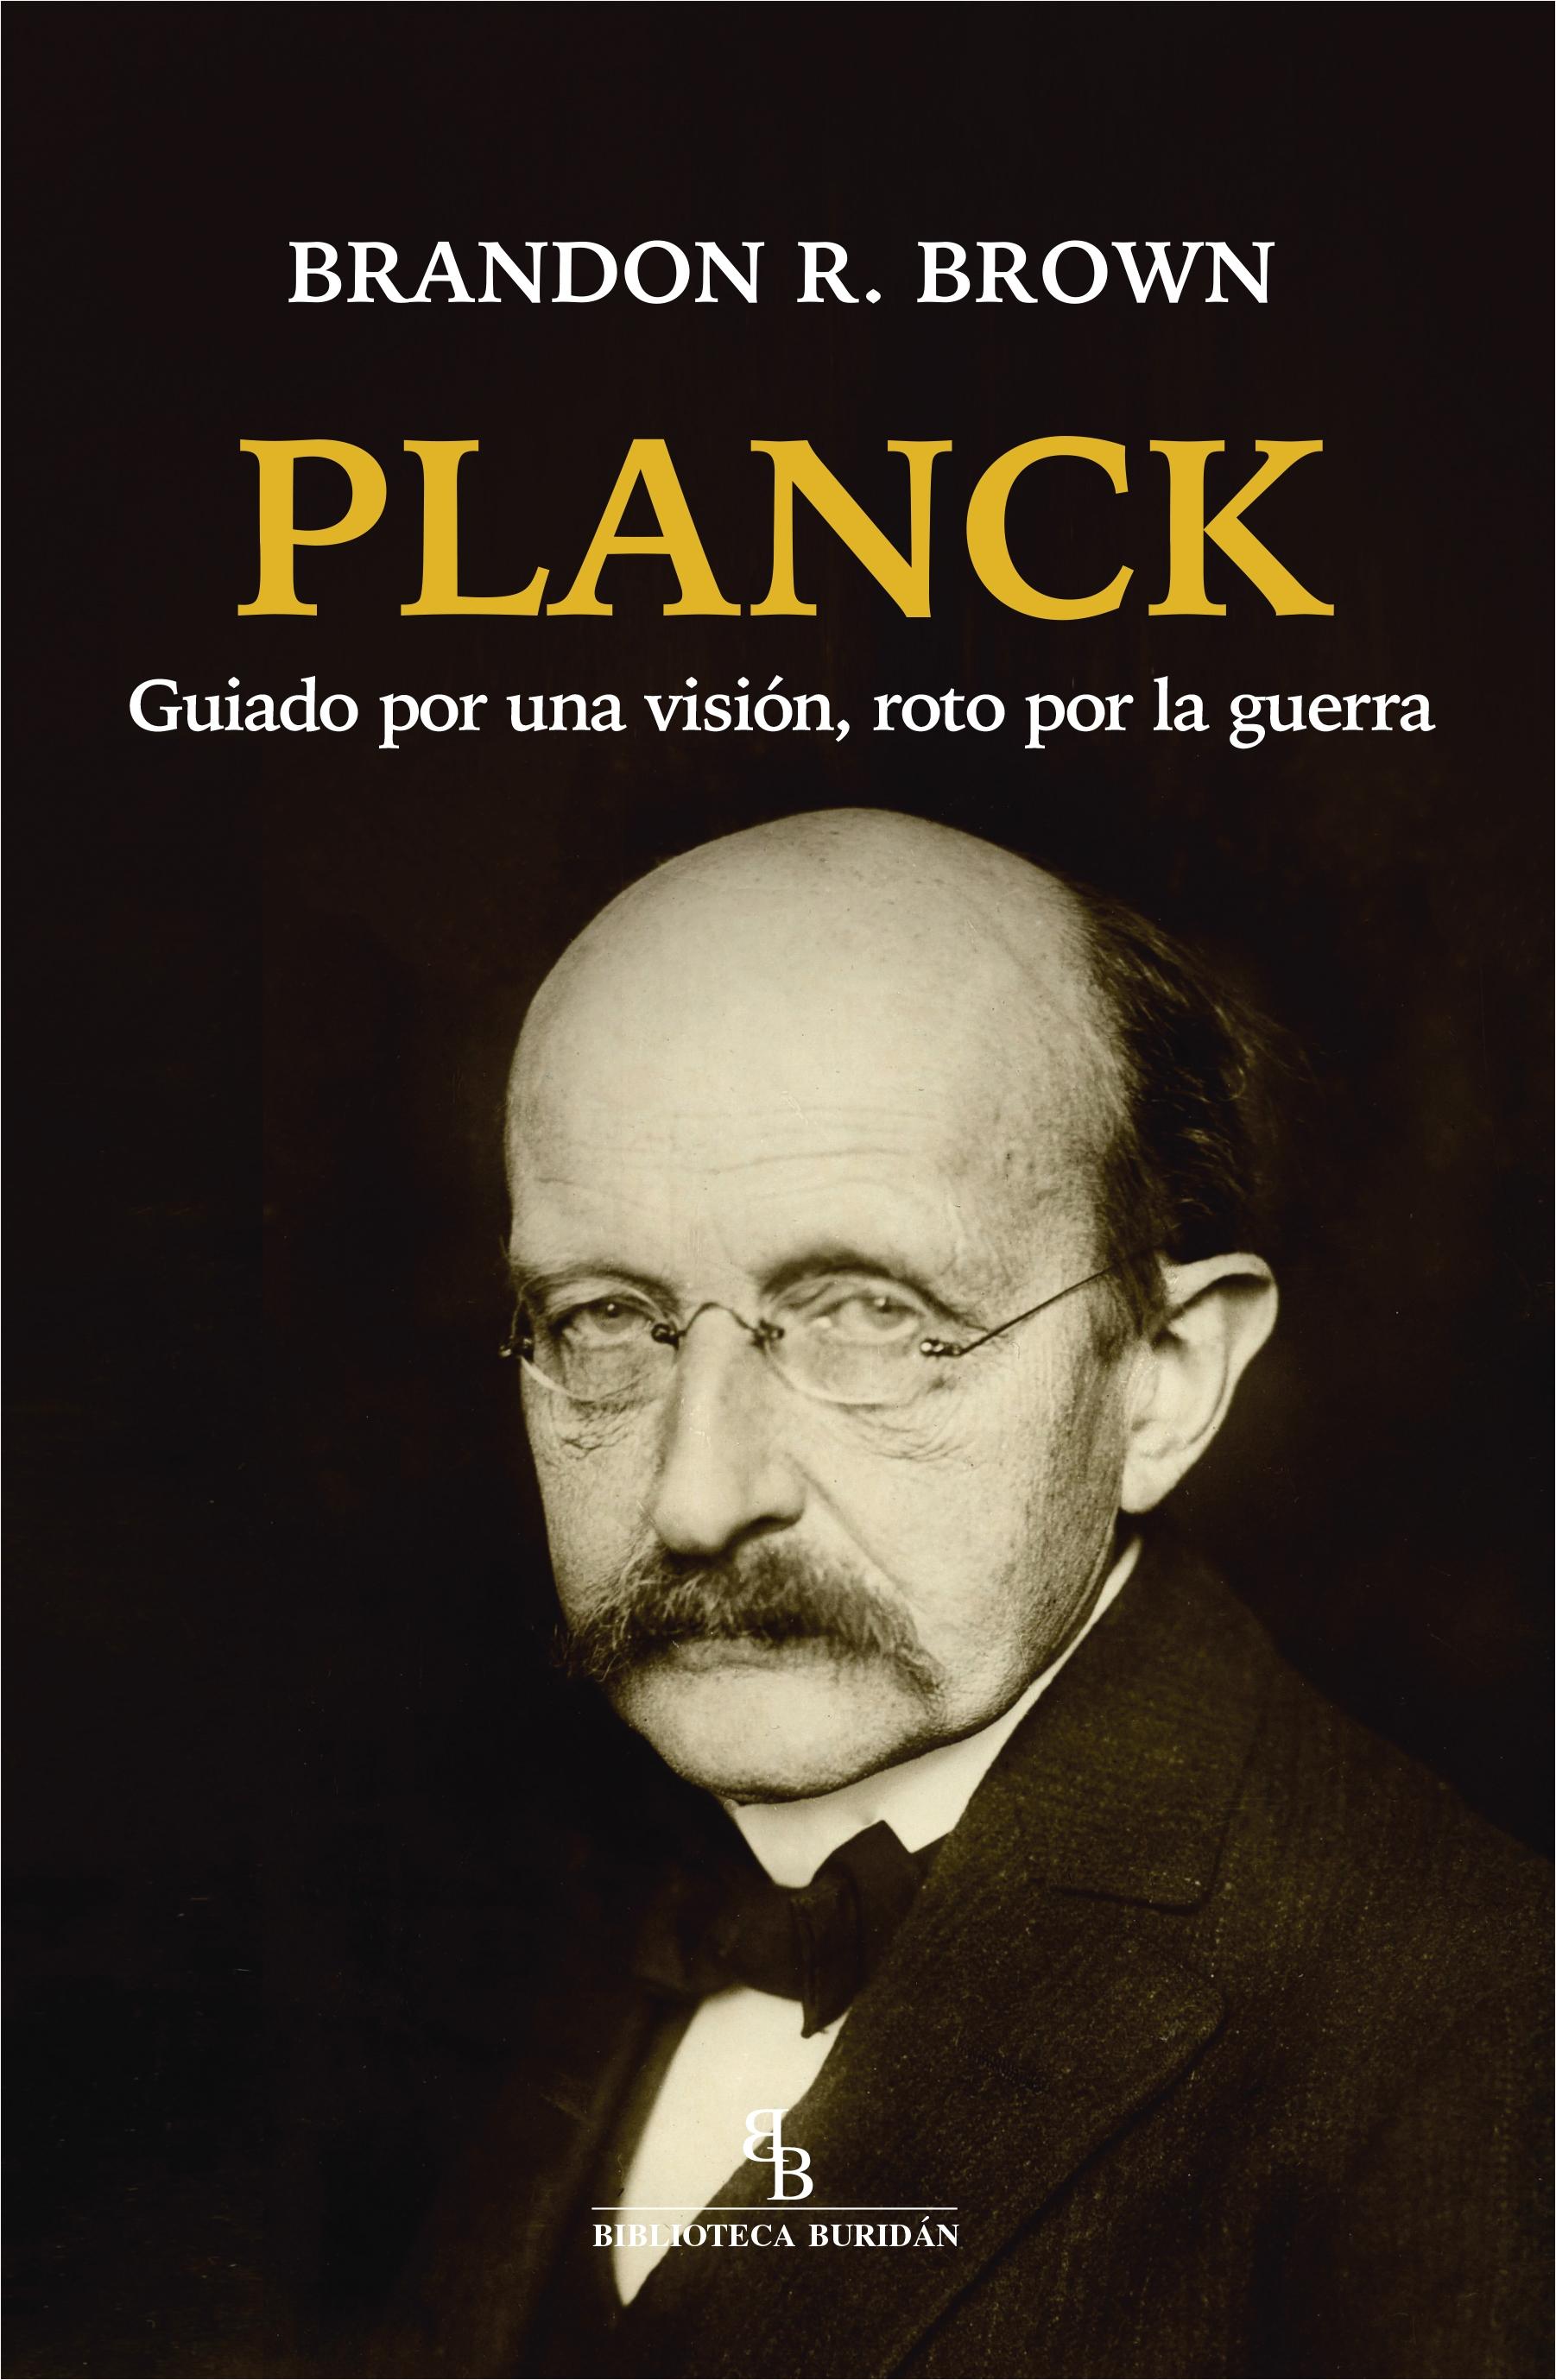 Planck "Guiado por una visión roto por la guerra"